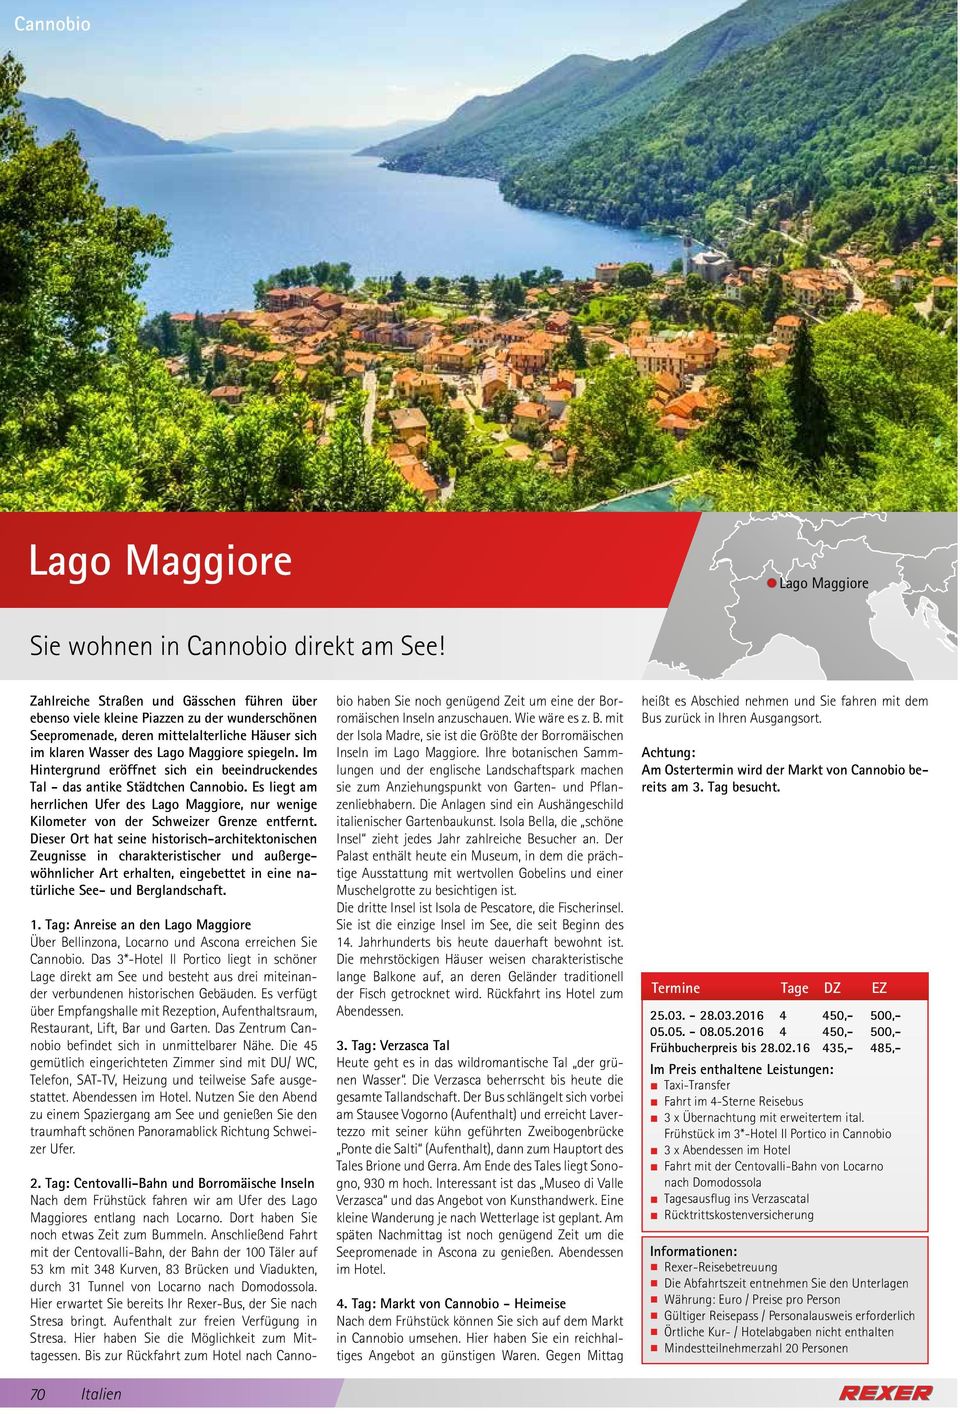 Im Hintergrund eröffnet sich ein beeindruckendes Tal - das antike Städtchen Cannobio. Es liegt am herrlichen Ufer des Lago Maggiore, nur wenige Kilometer von der Schweizer Grenze entfernt.